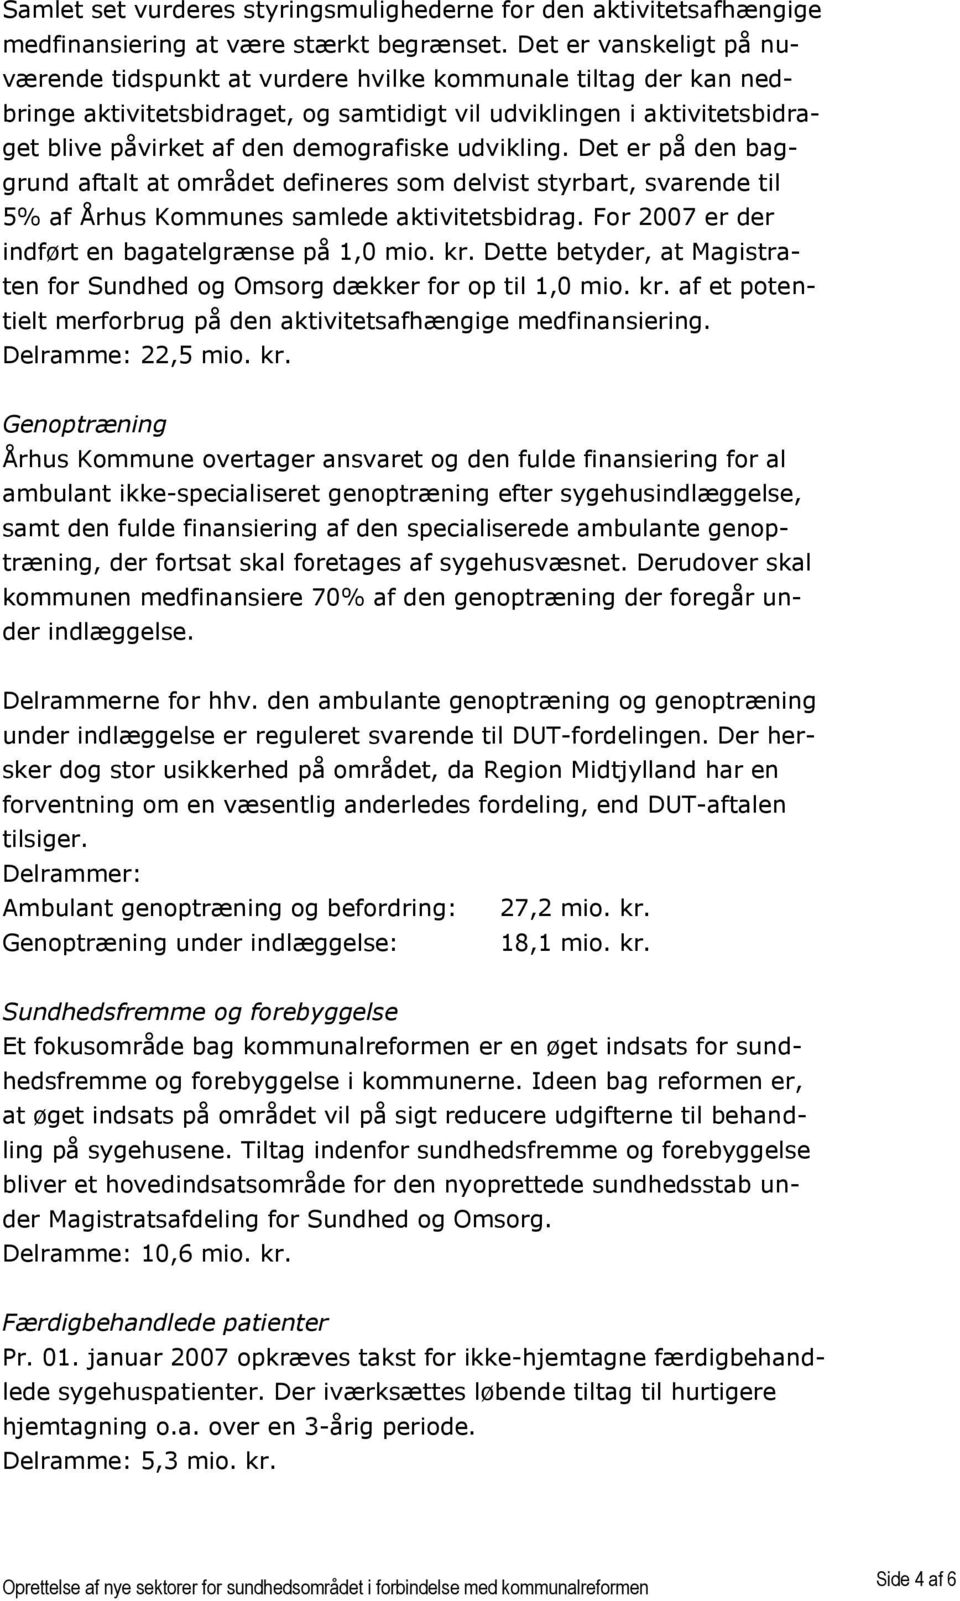 udvikling. Det er på den baggrund aftalt at området defineres som delvist styrbart, svarende til 5% af Århus Kommunes samlede aktivitetsbidrag. For 2007 er der indført en bagatelgrænse på 1,0 mio. kr.